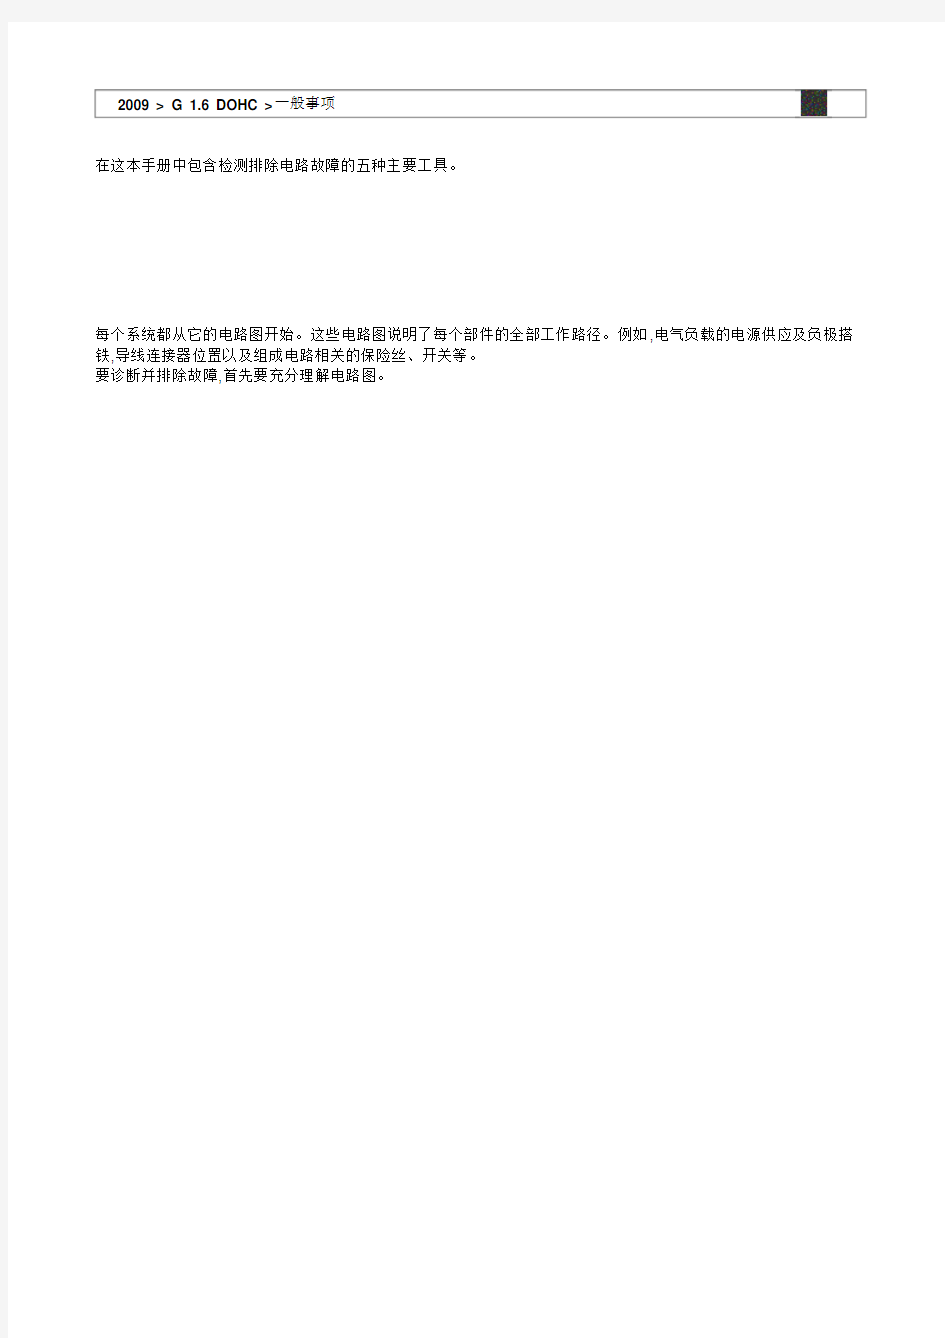 2009北京现代伊兰特1.6L电路图册 